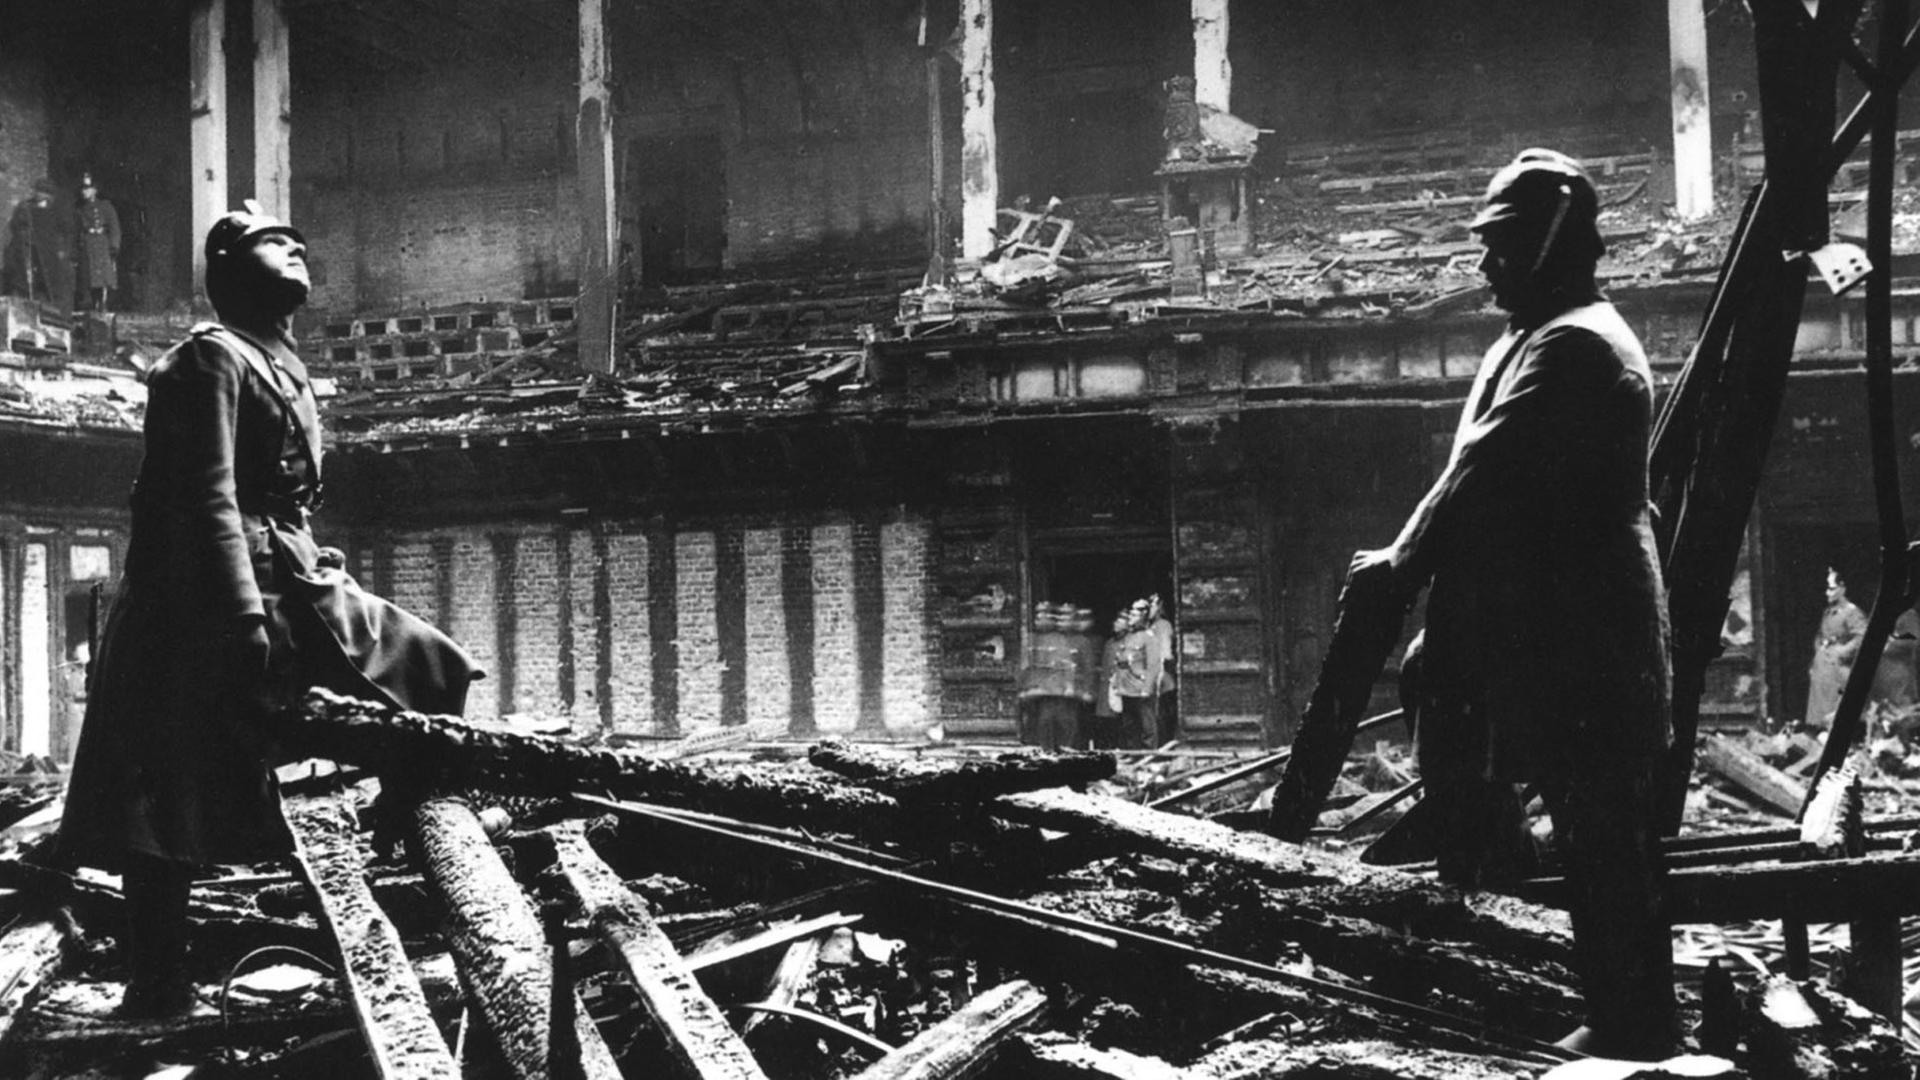 Der Reichstag geht 1933 in Flammen auf. Am Tatort wird der vermeintliche Brandstifter Marinus van der Lubbe, ein holländischer Kommunist, festgenommen.